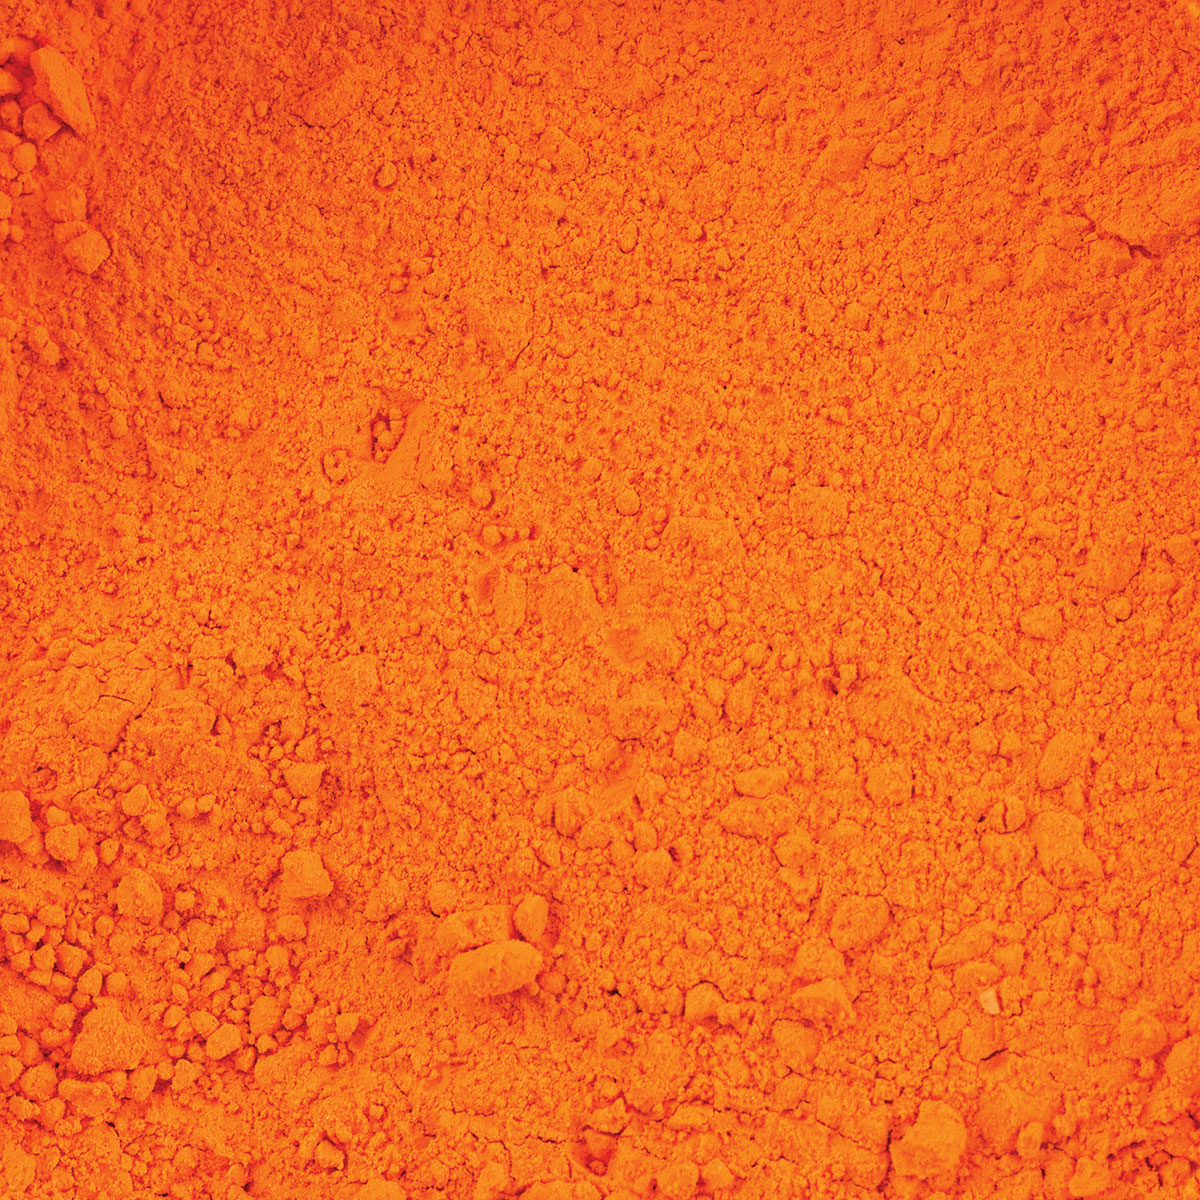 1lb Orange Tempera Powder @ Raw Materials Art Supplies